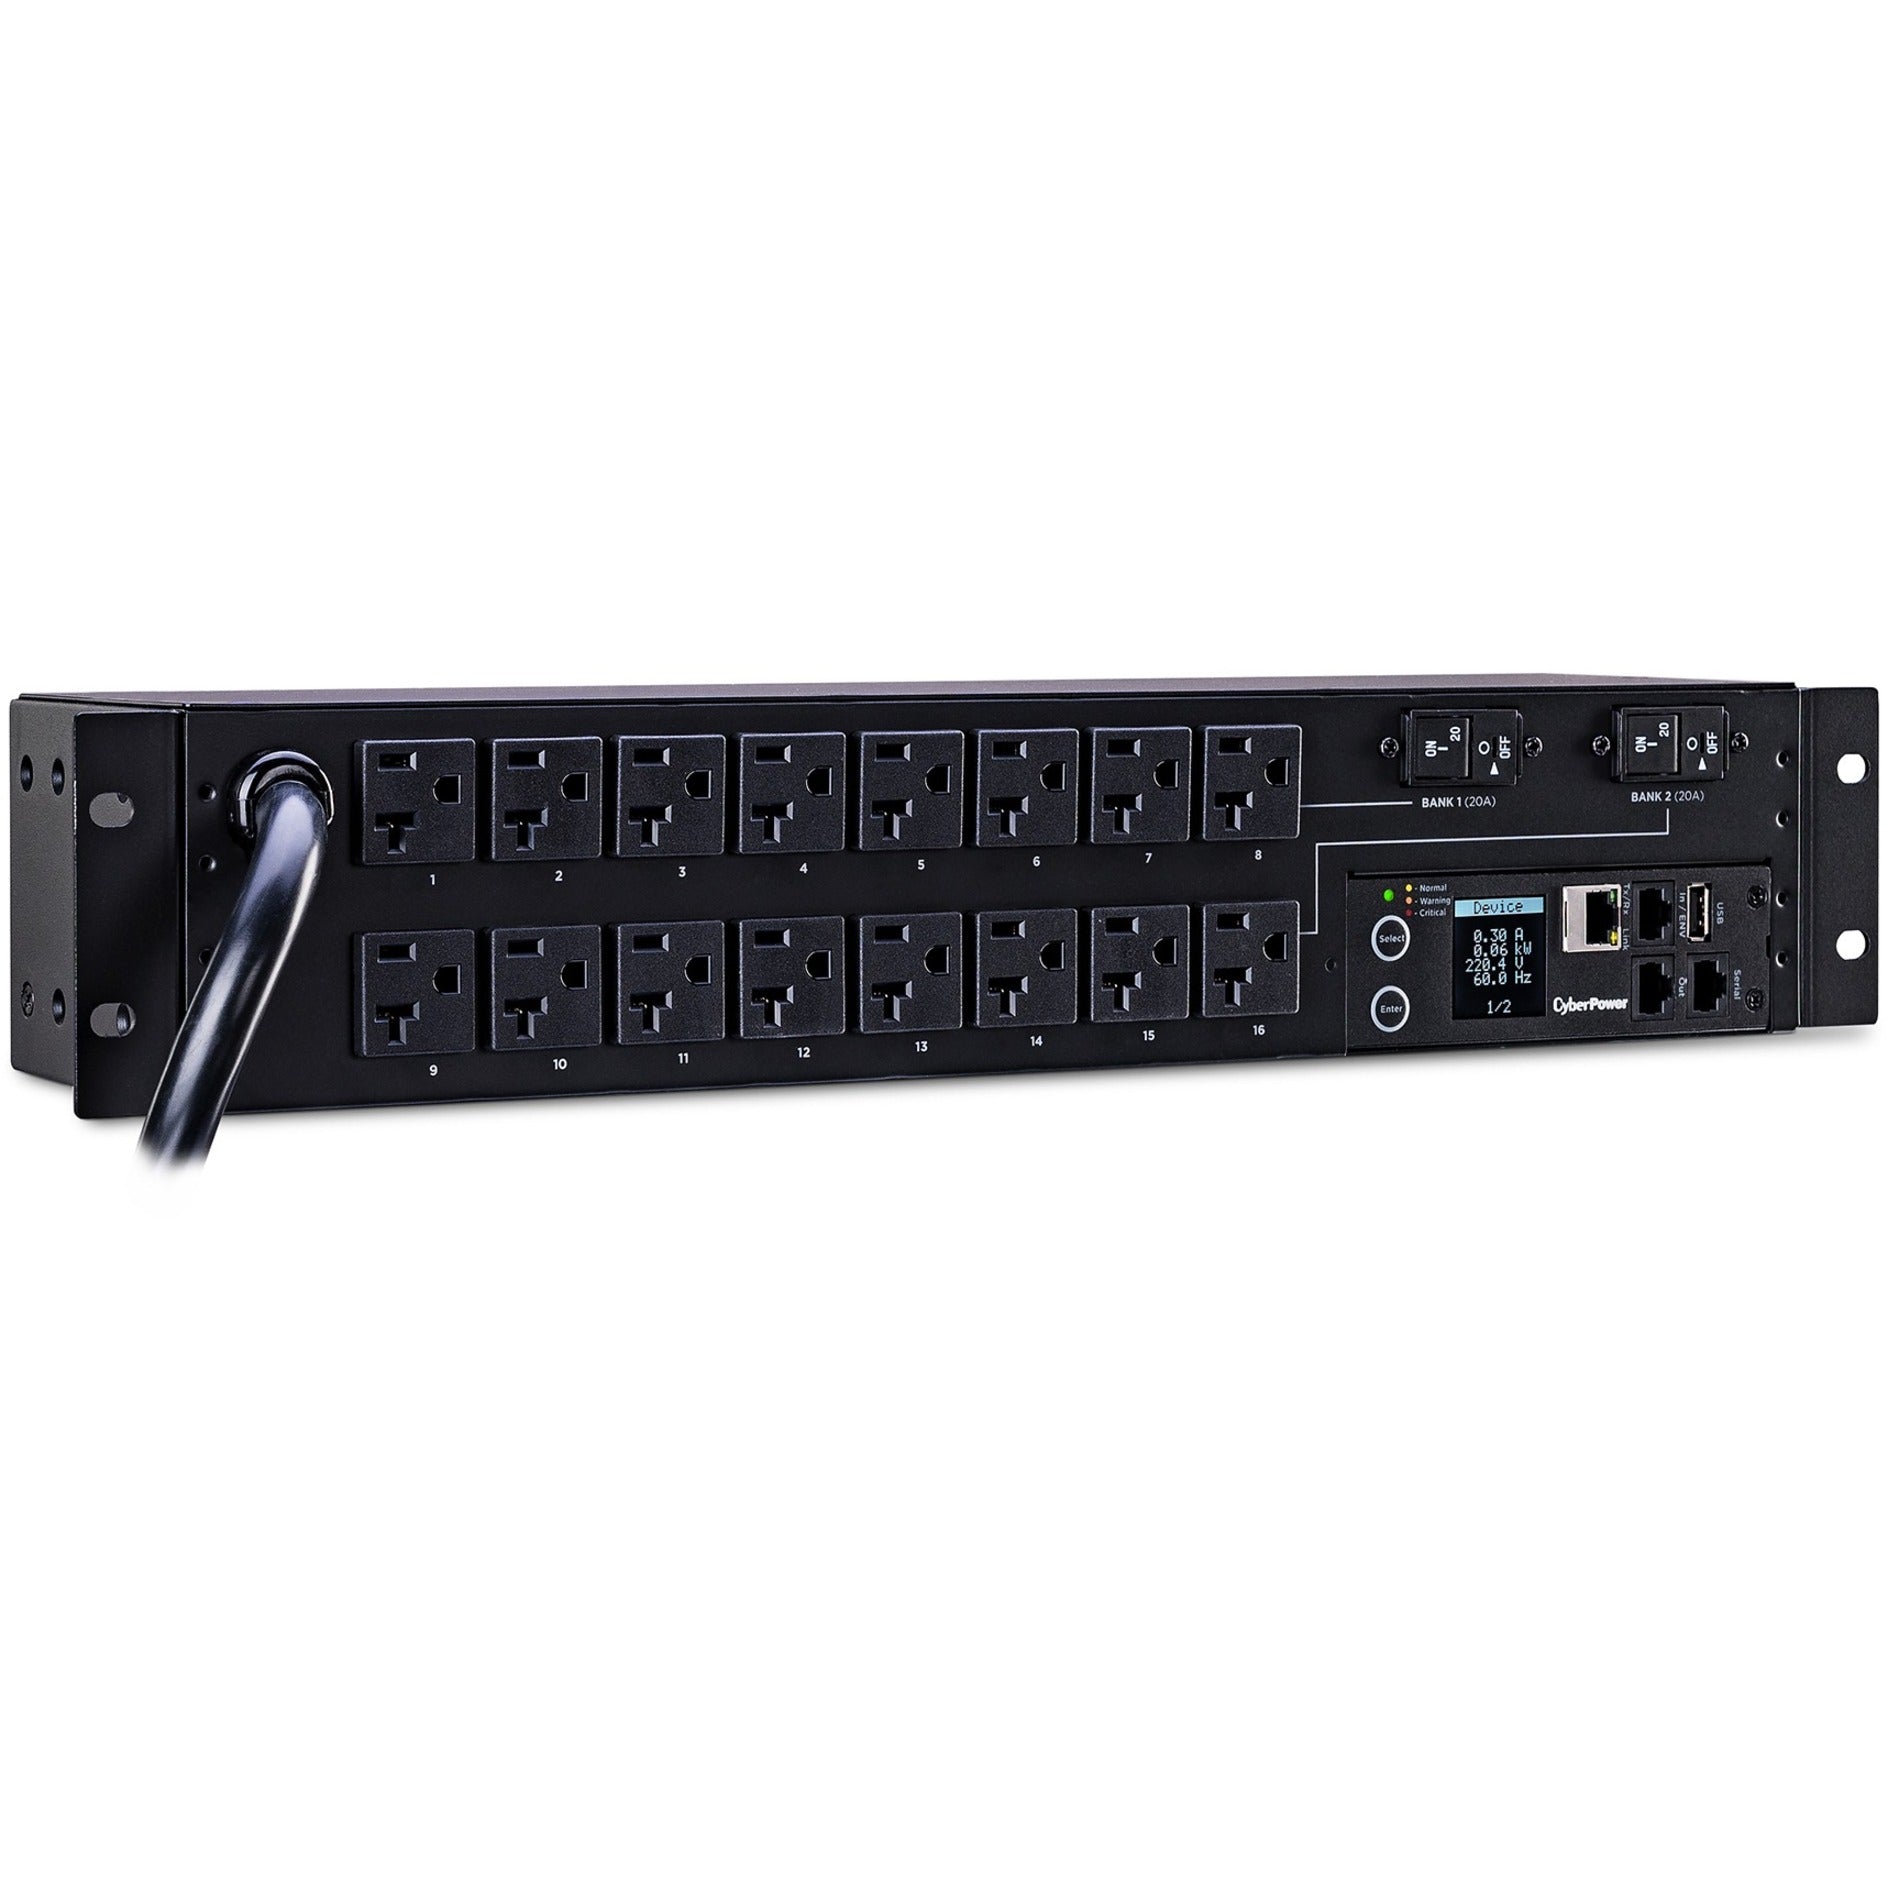 CyberPower PDU31003 16-Outlet PDU, 120V, 12ft Cord, 2U, 3-Year Warranty